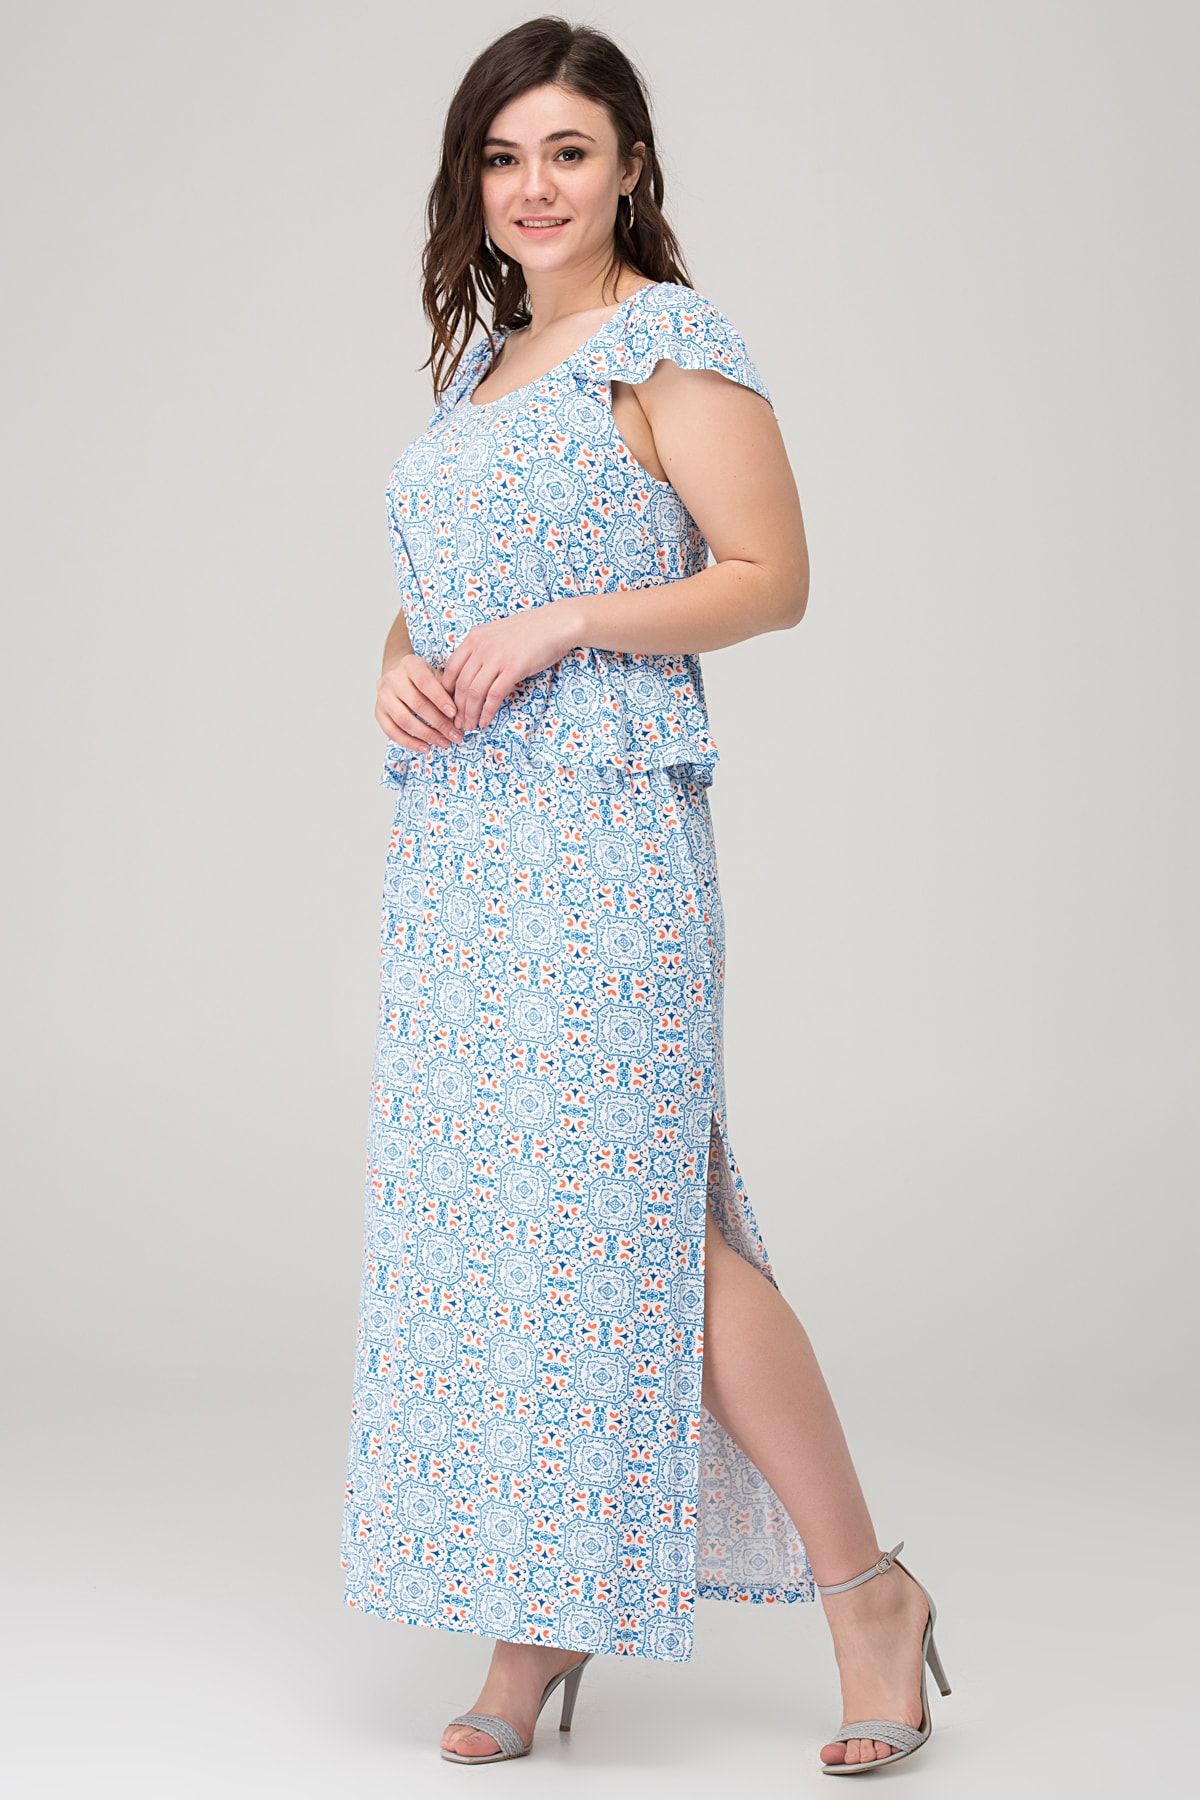 Şans Tekstil Kadın Mavi Desenli Viskon Elbise 85n5707